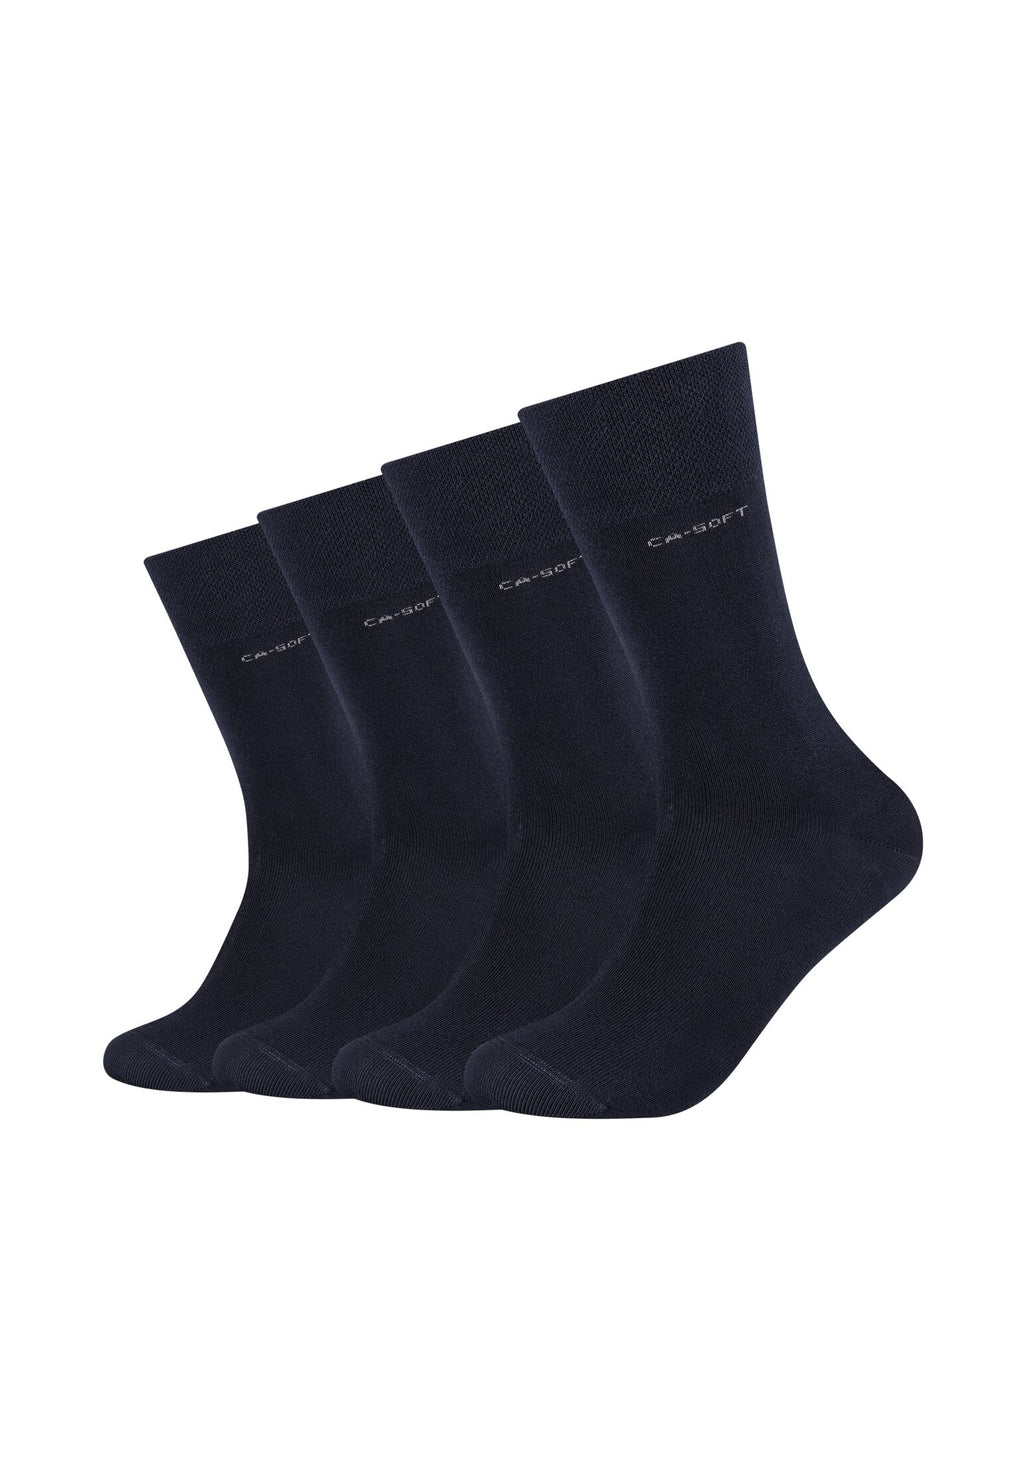 Socken ca-soft Bamboo 4er Pack – ONSKINERY